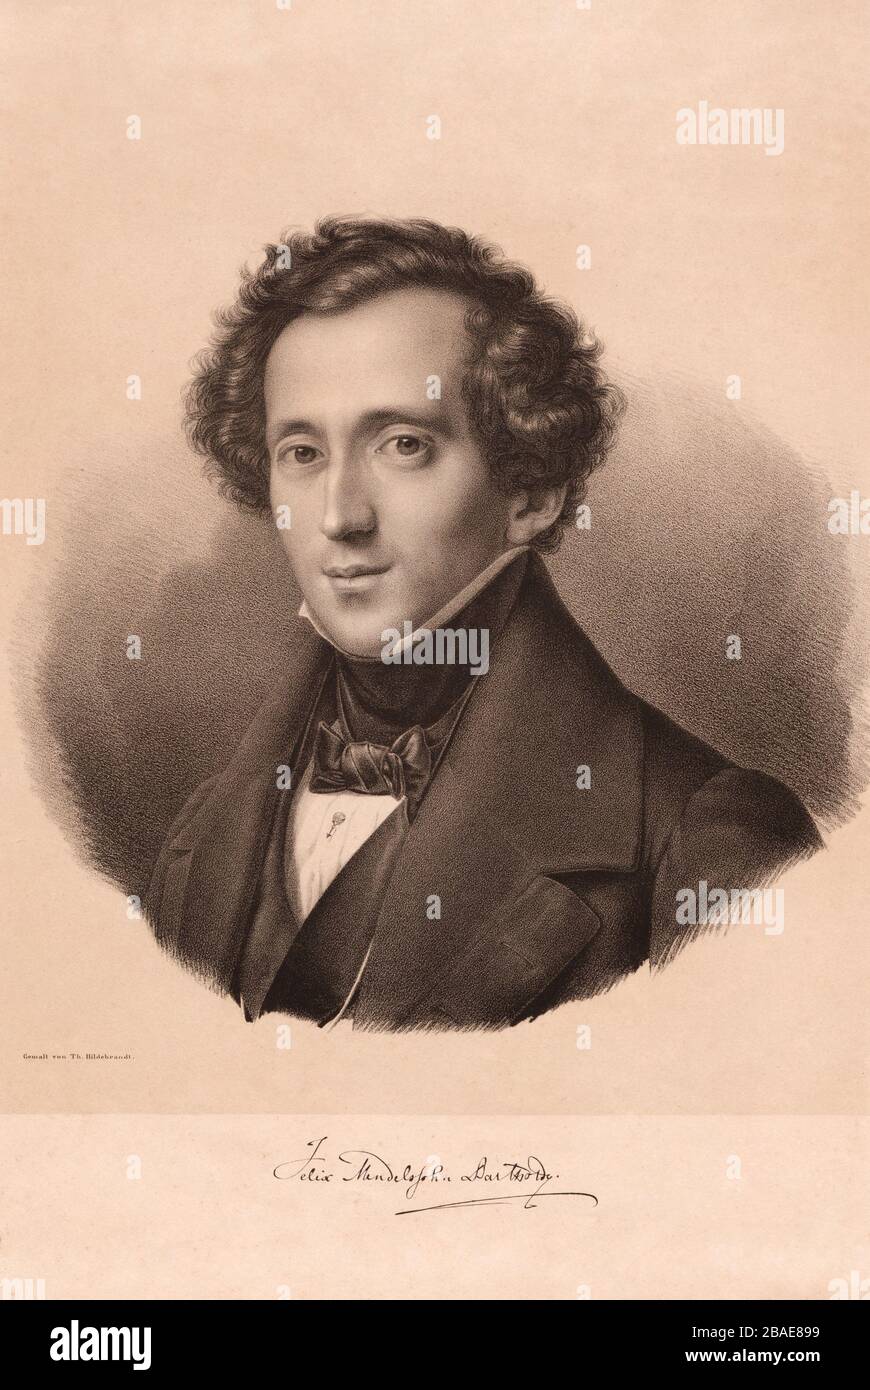 Foto di Jakob Ludwig Felix Mendelssohn Bartholdy (1809 – 1847), compositore, pianista, organista e direttore d'orchestra tedesco del primo periodo romantico. M Foto Stock